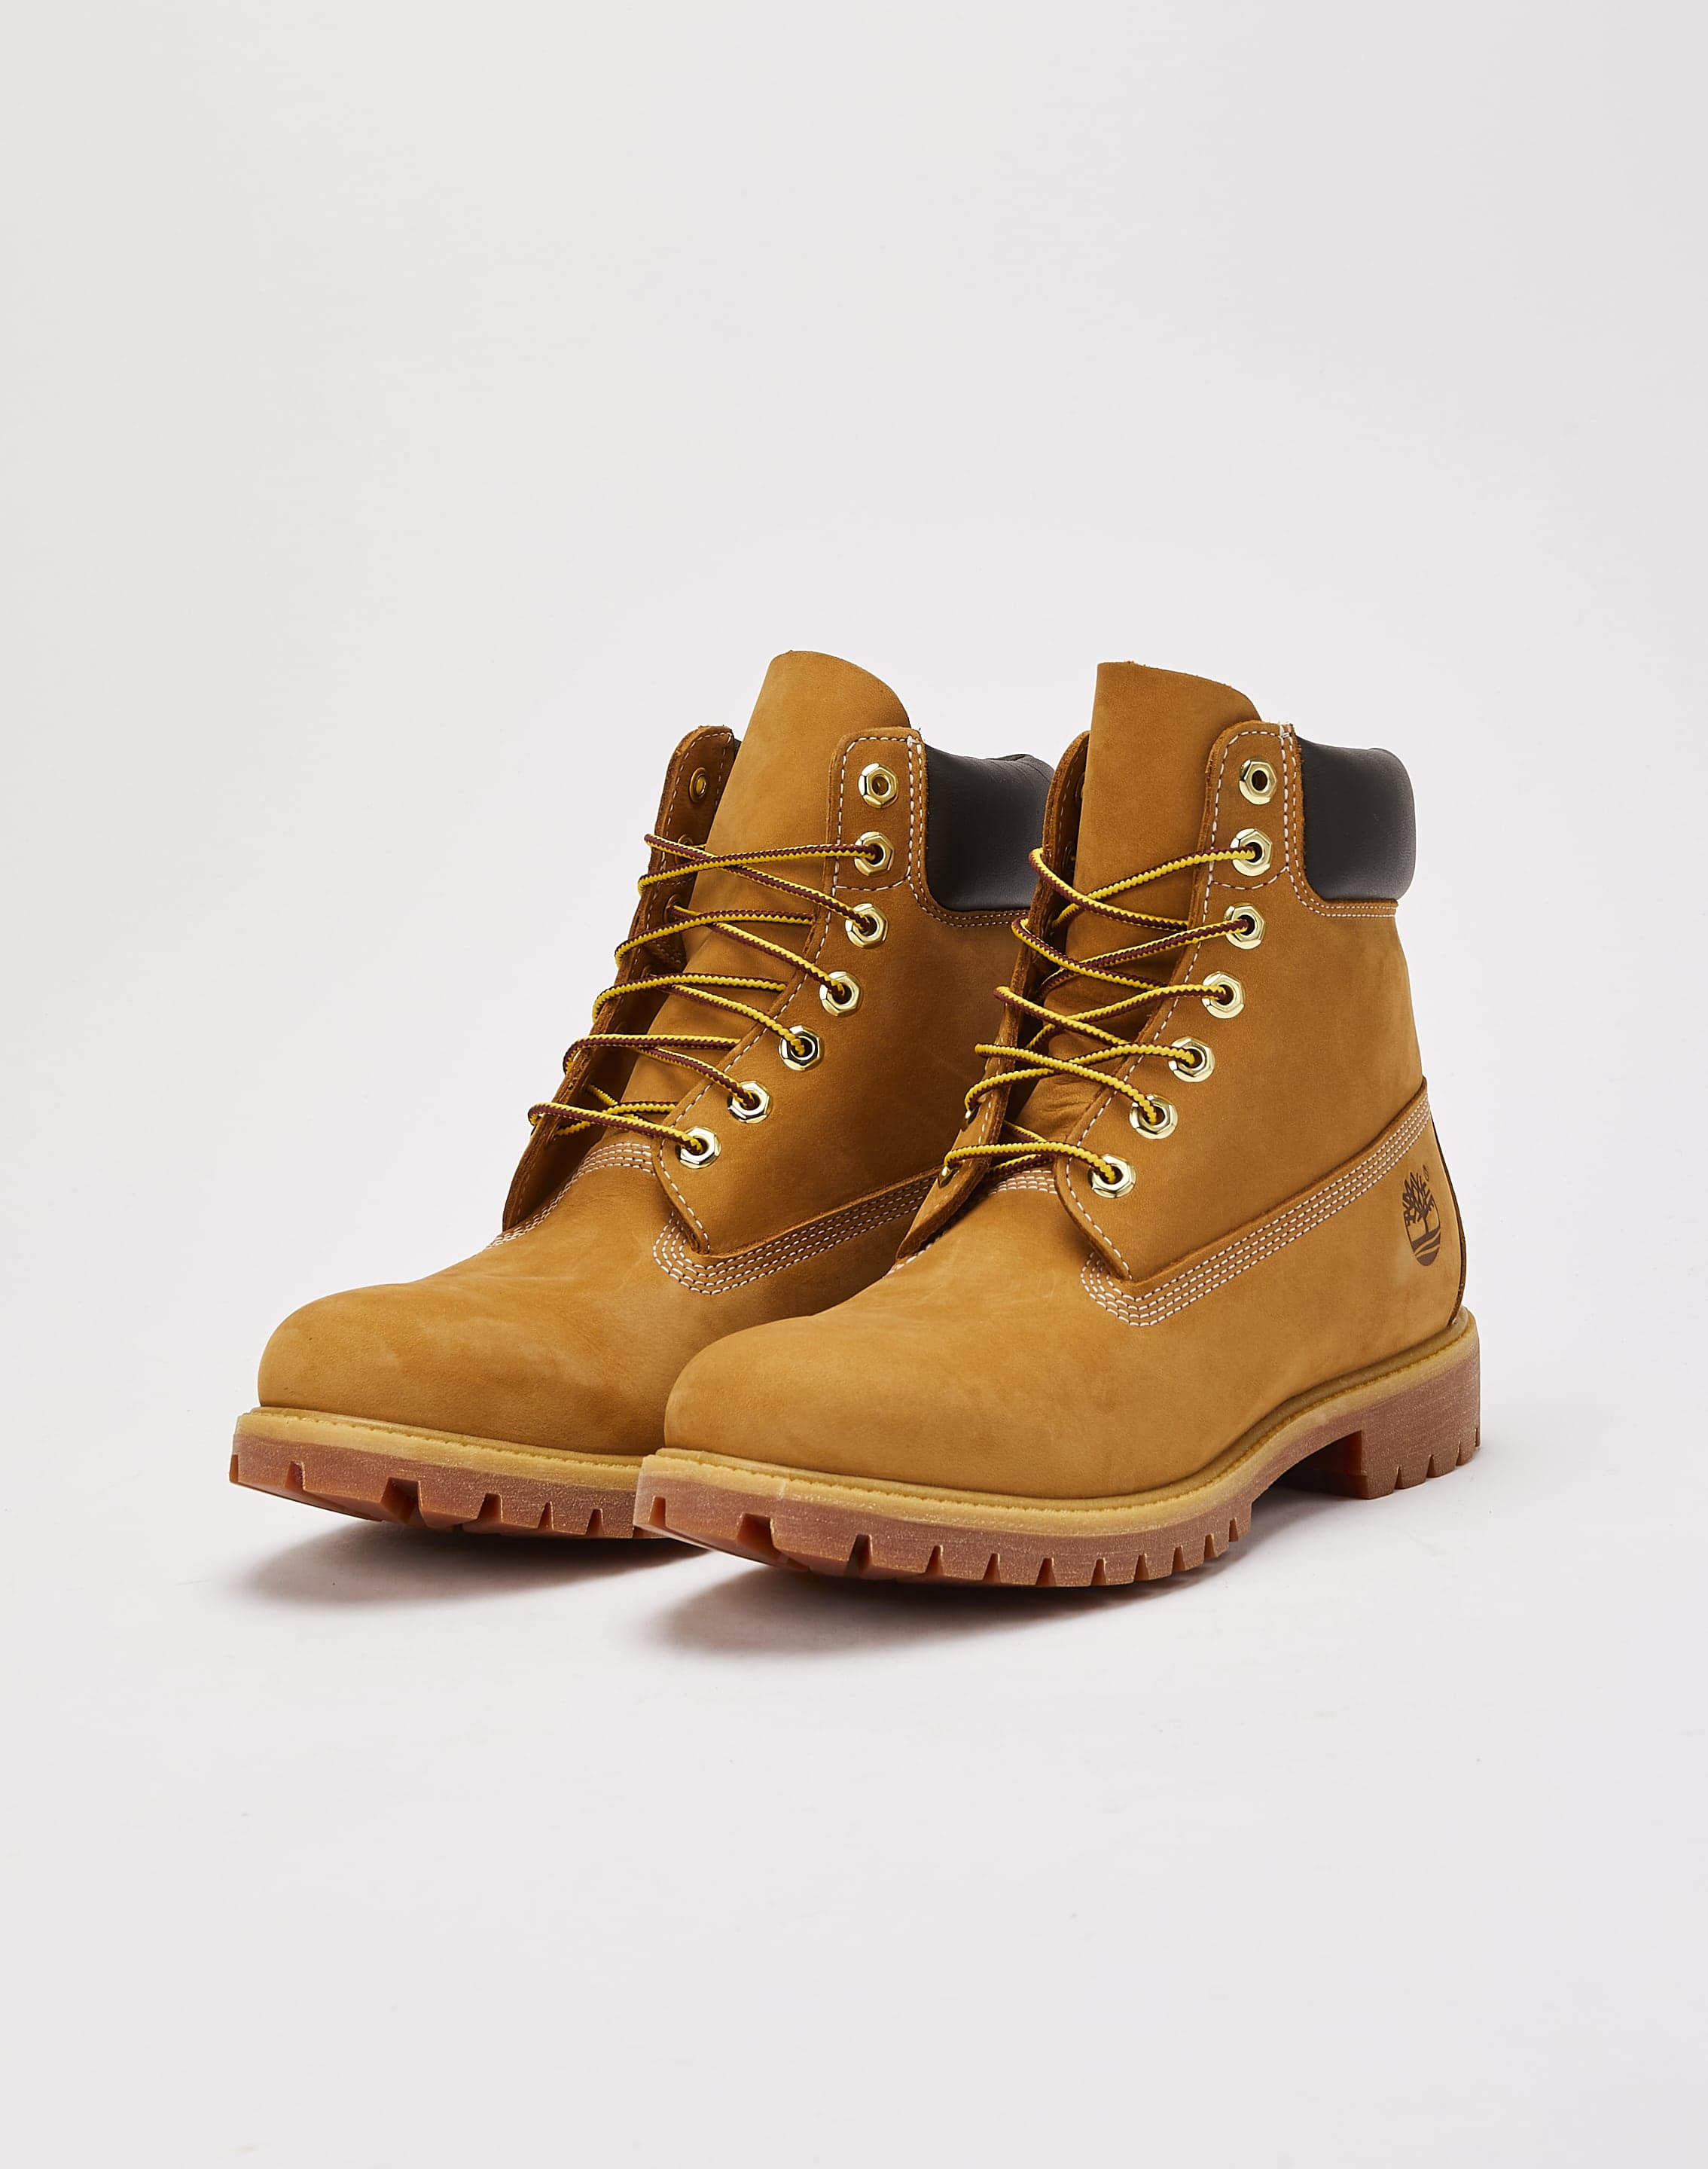 Timberland Premium Waterproof Boots – DTLR